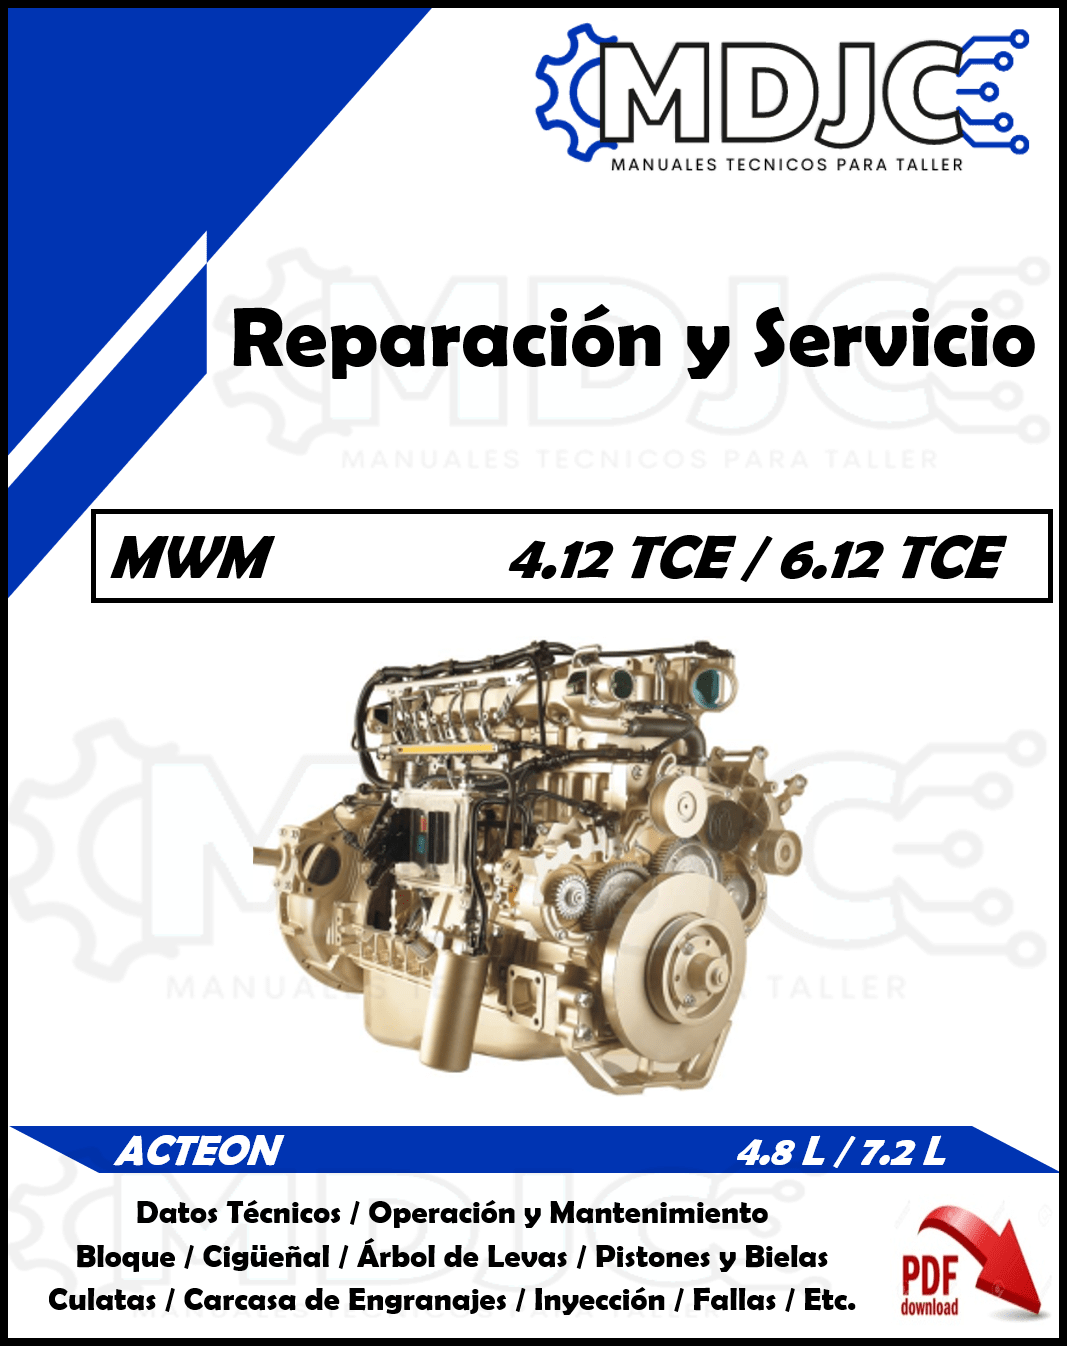 Manual de Taller (Reparación y Servicio) Motor International MWM Acteon / 4.12 TCE / 6.12 TCE